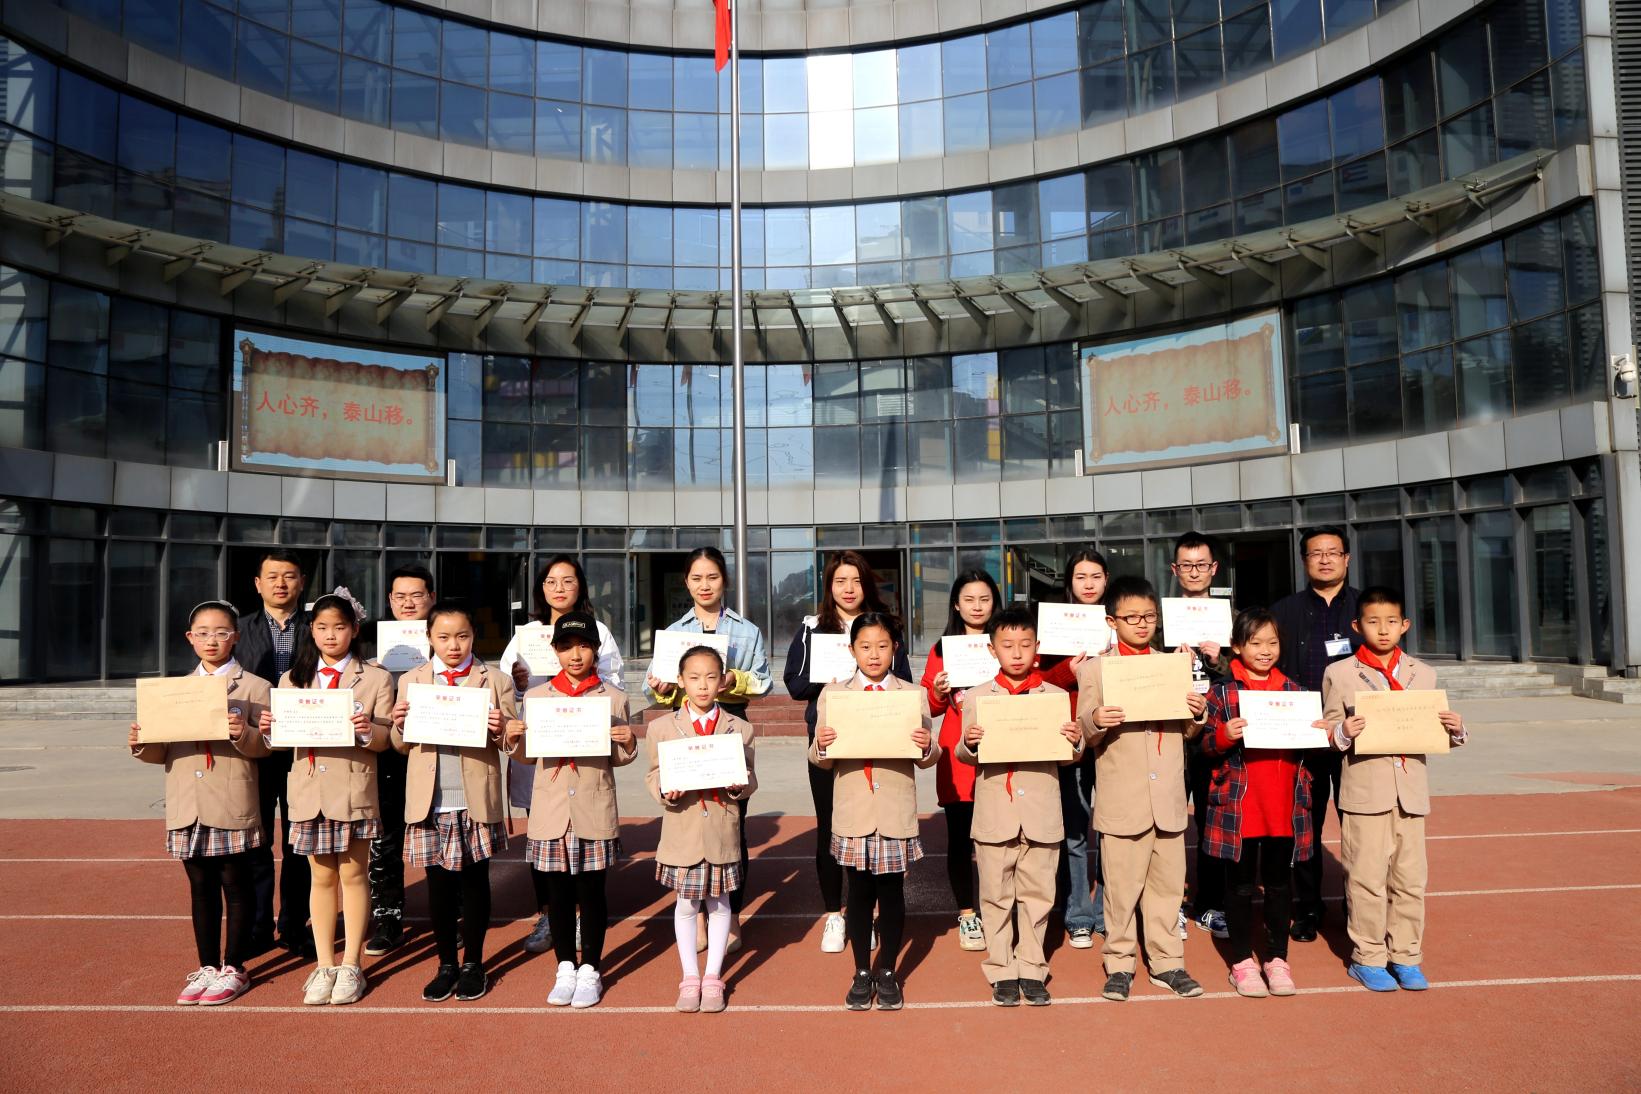 郑州市管城区外国语牧歌小学组织举行"人心齐,泰山移"主题升旗仪式